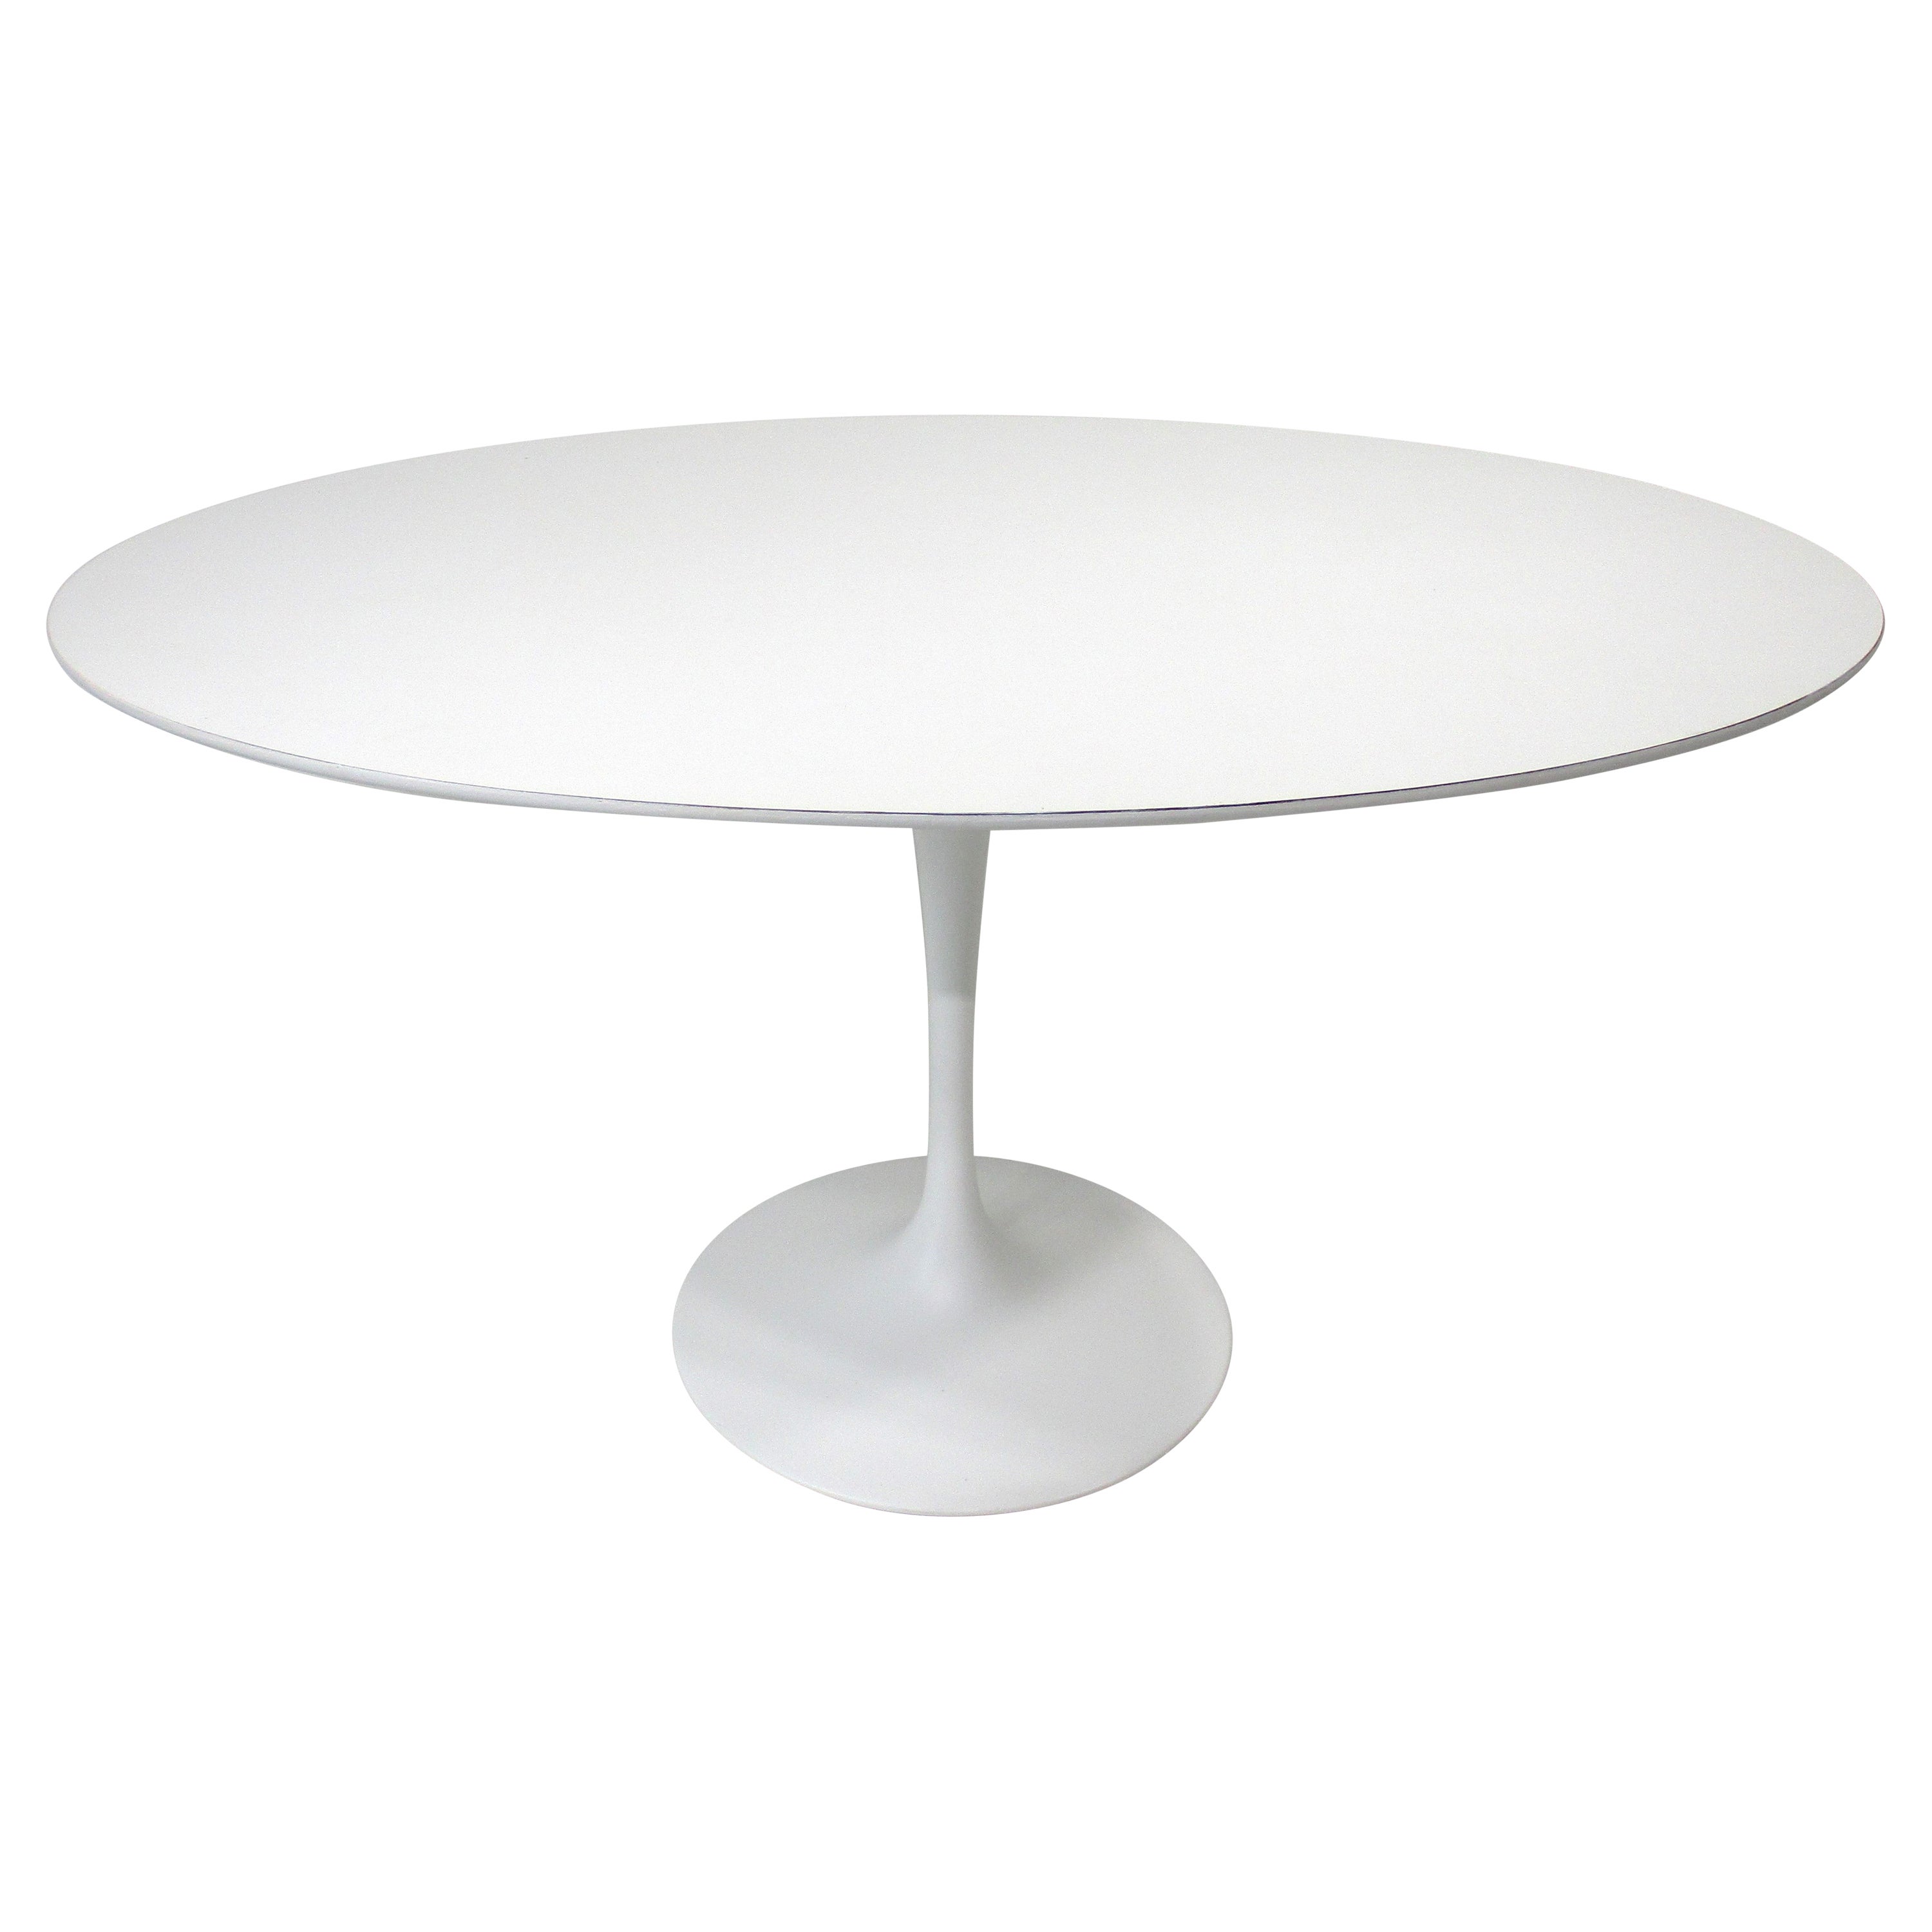 How tall is an Eero Saarinen table?